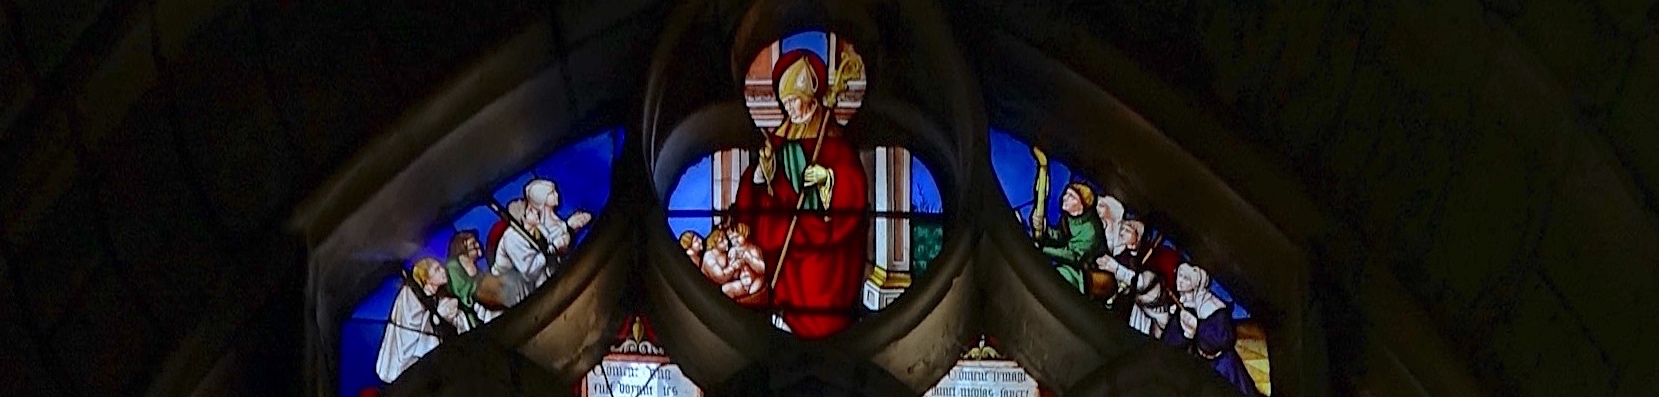 [A] Les 3 petits enfants (à gauche et à droite : pélerins),<br>Eglise Saint Florentin - Saint Florentin 89